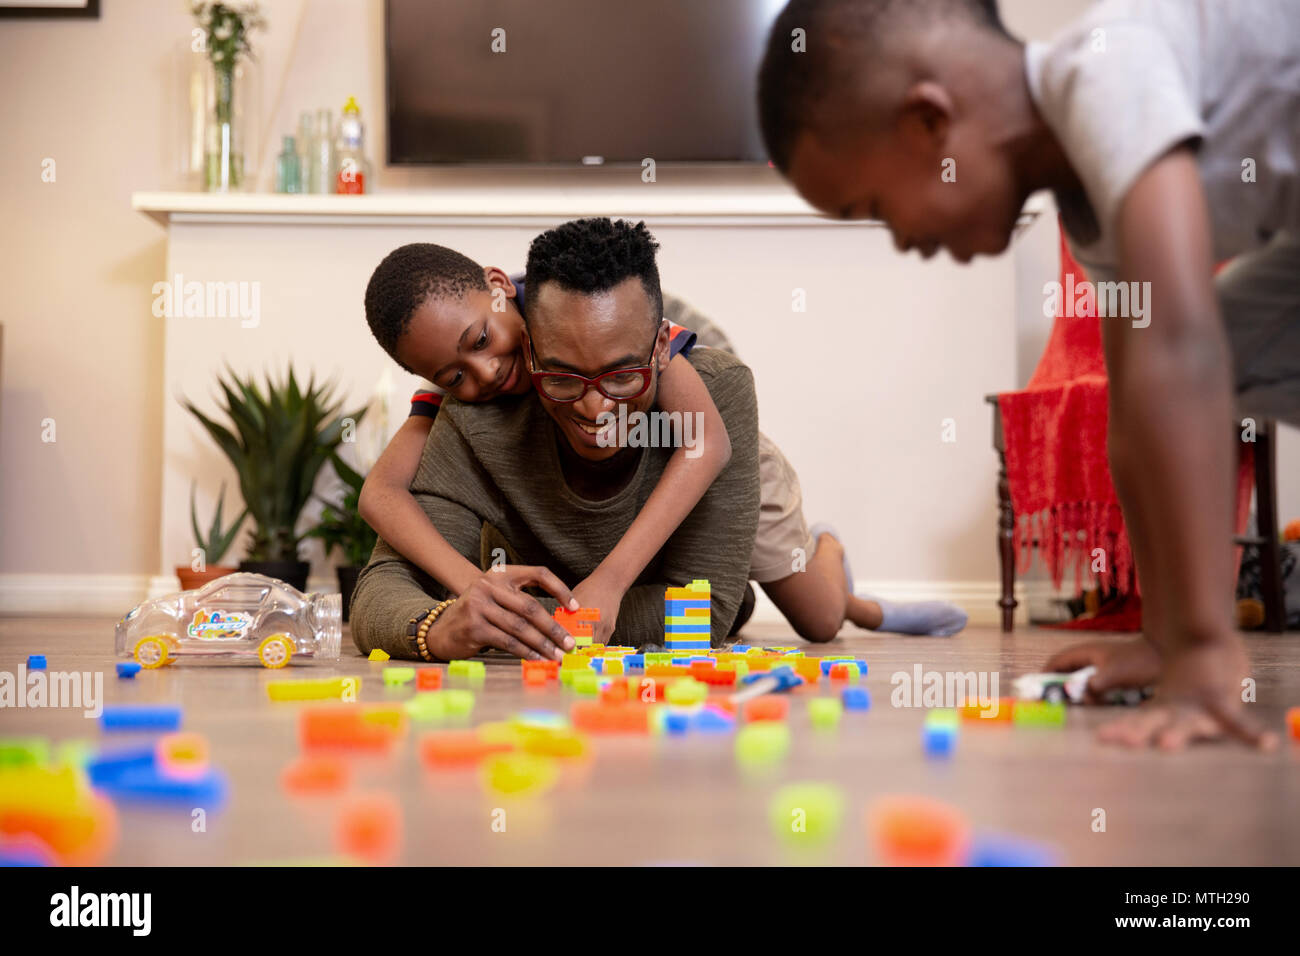 Père et fils jouer avec ses jouets sur le plancher Banque D'Images